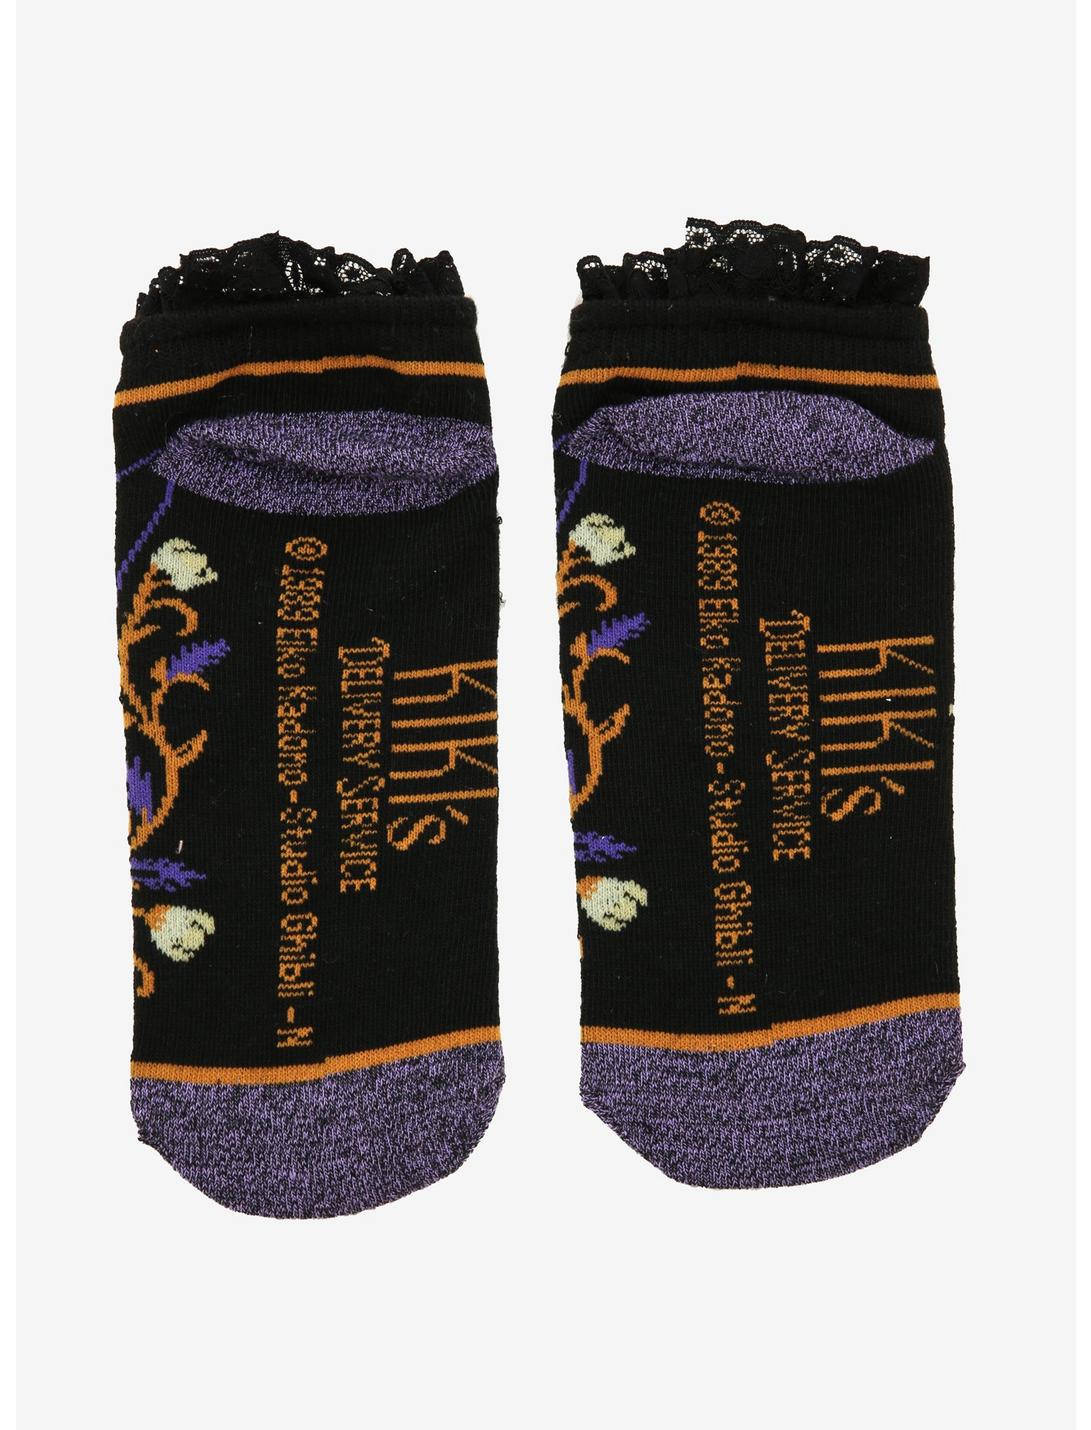 Kiki’s Delivery Service Jiji Floral Lace Ankle Socks